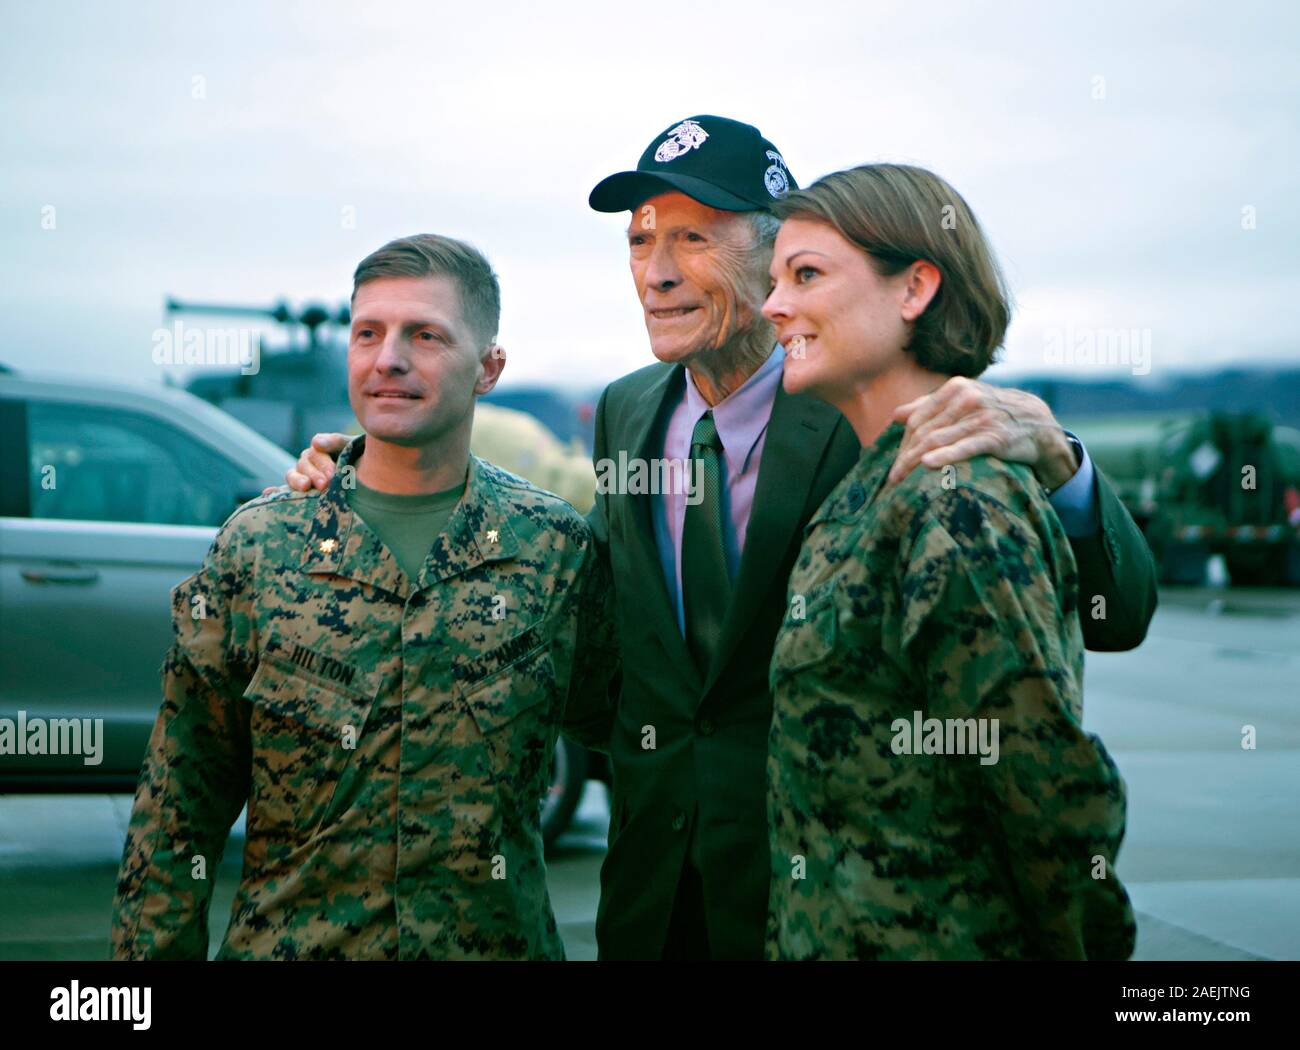 L'acteur et réalisateur Clint Eastwood, au centre, pose avec le major du Corps des Marines américain Matthew Hilton, à gauche, et le sergent-chef. Kristin Bagley, à la suite d'une recherche avancée montrant des Eastwoods dernier film au Marine Corps Air Station Camp Pendleton, le 7 décembre 2019 à Oceanside, en Californie. Banque D'Images